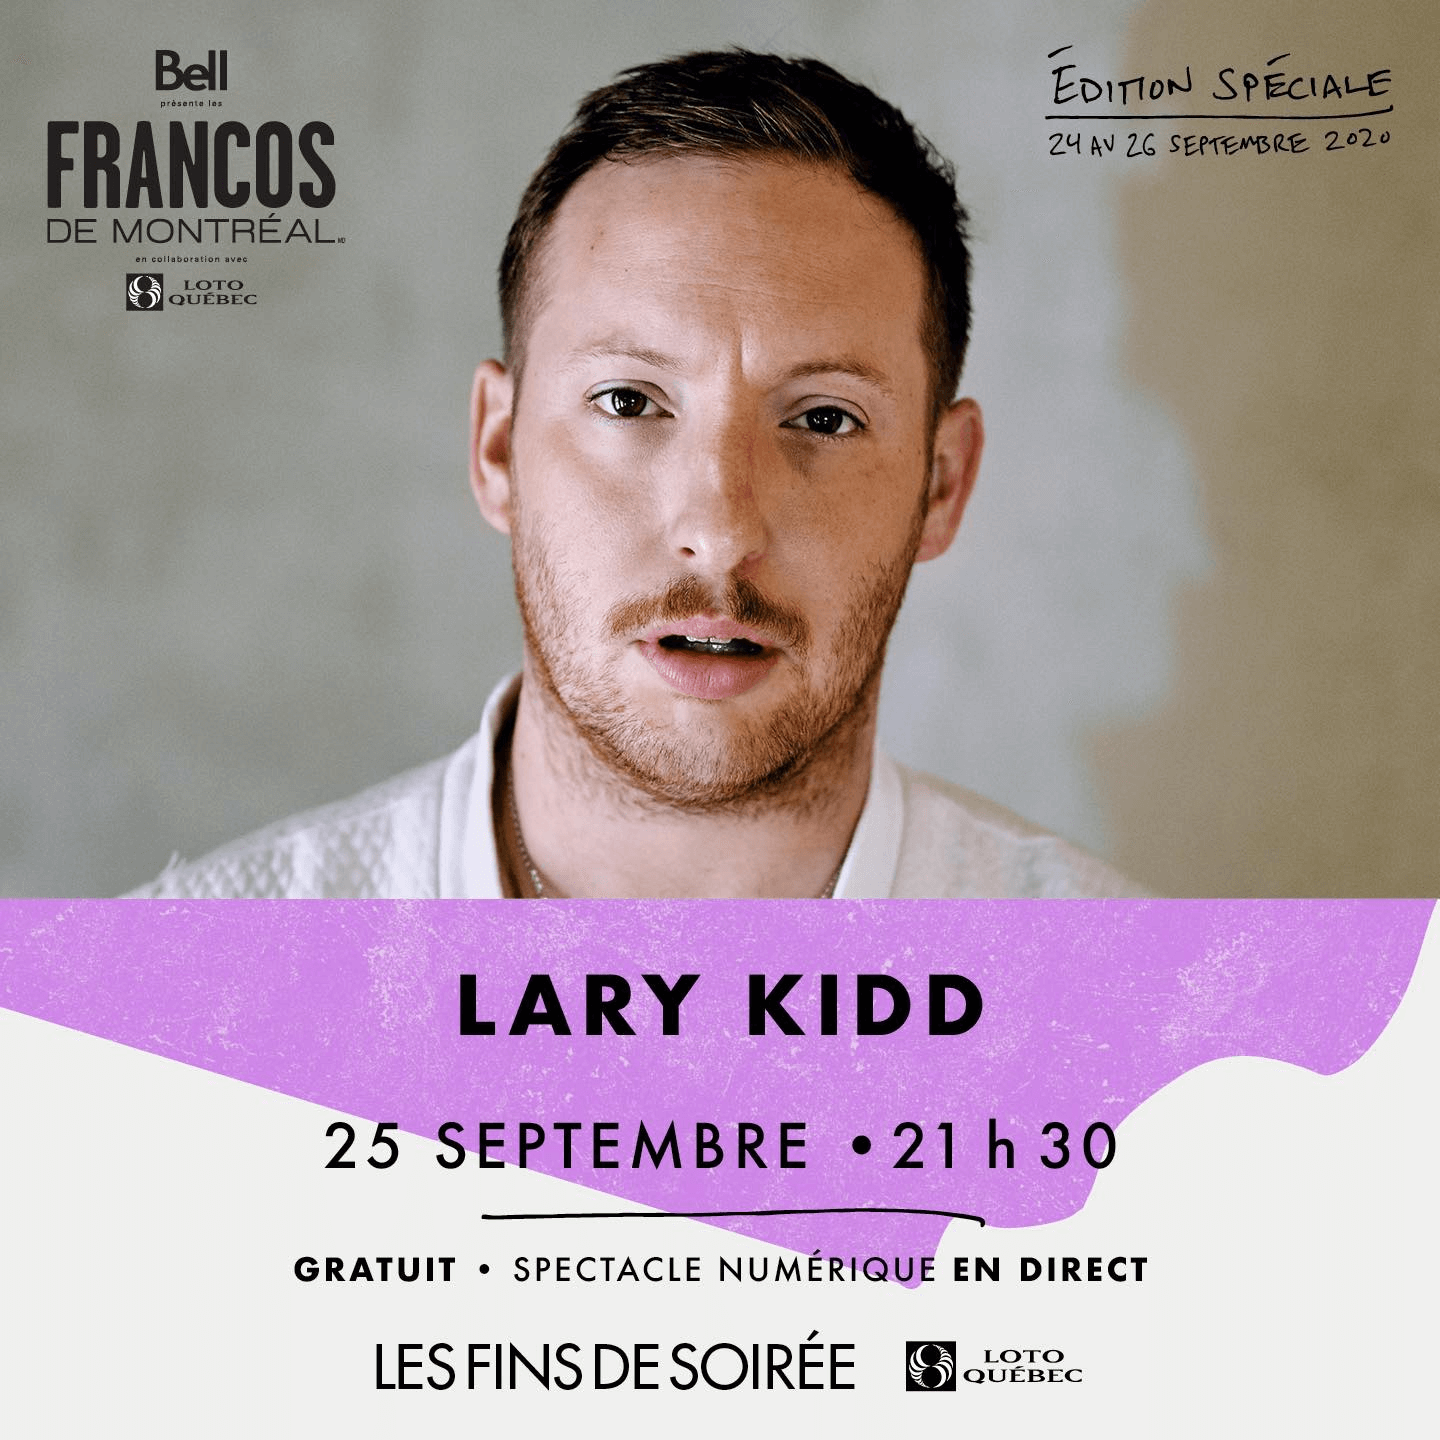 Lary Kidd aux Francos de Montréal pour l'édition spéciale 2020